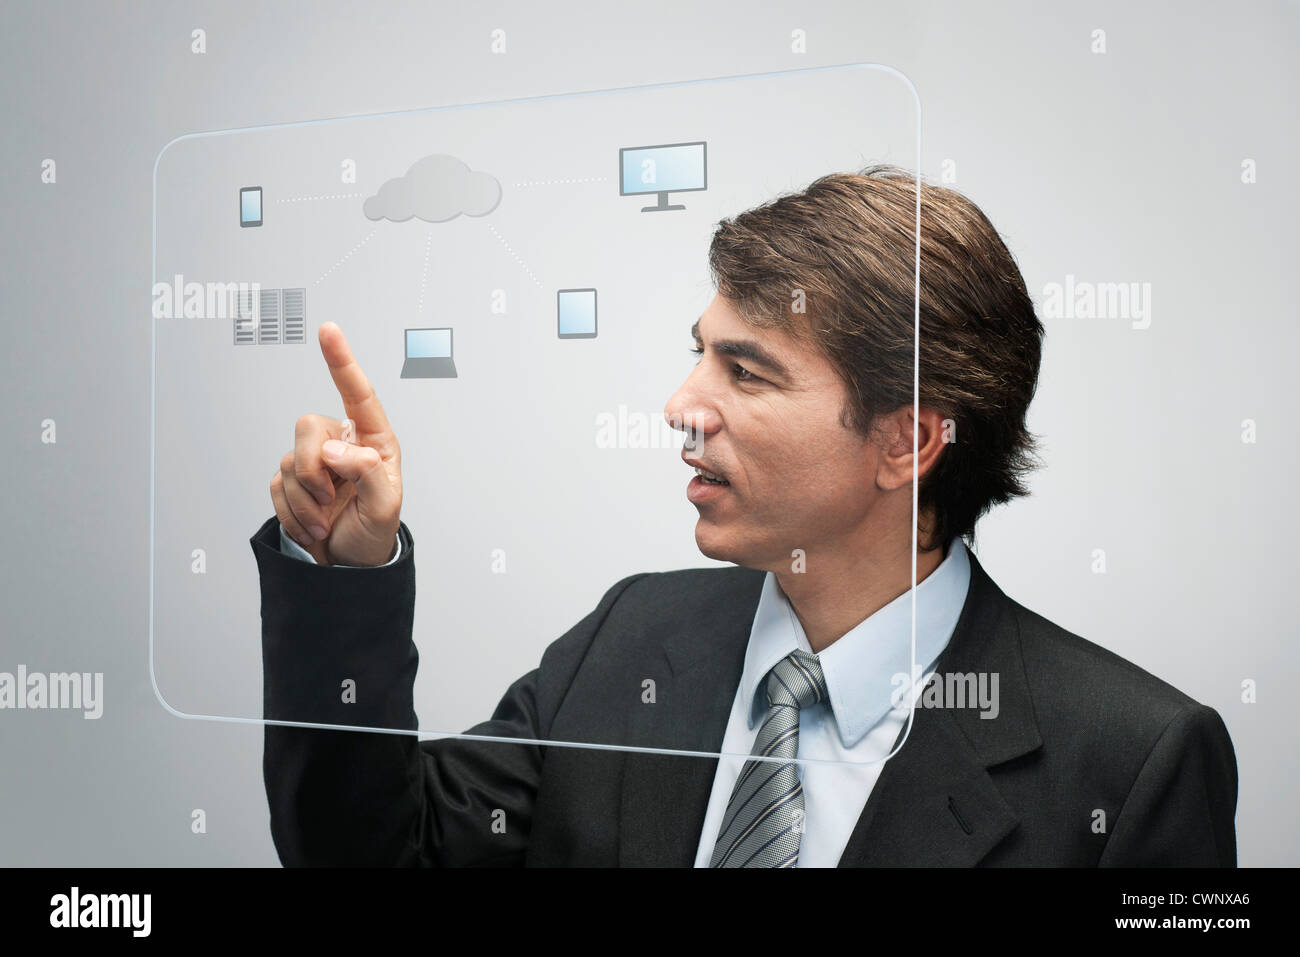 Businessman using la technologie cloud computing sur l'interface de l'écran tactile avancé Banque D'Images